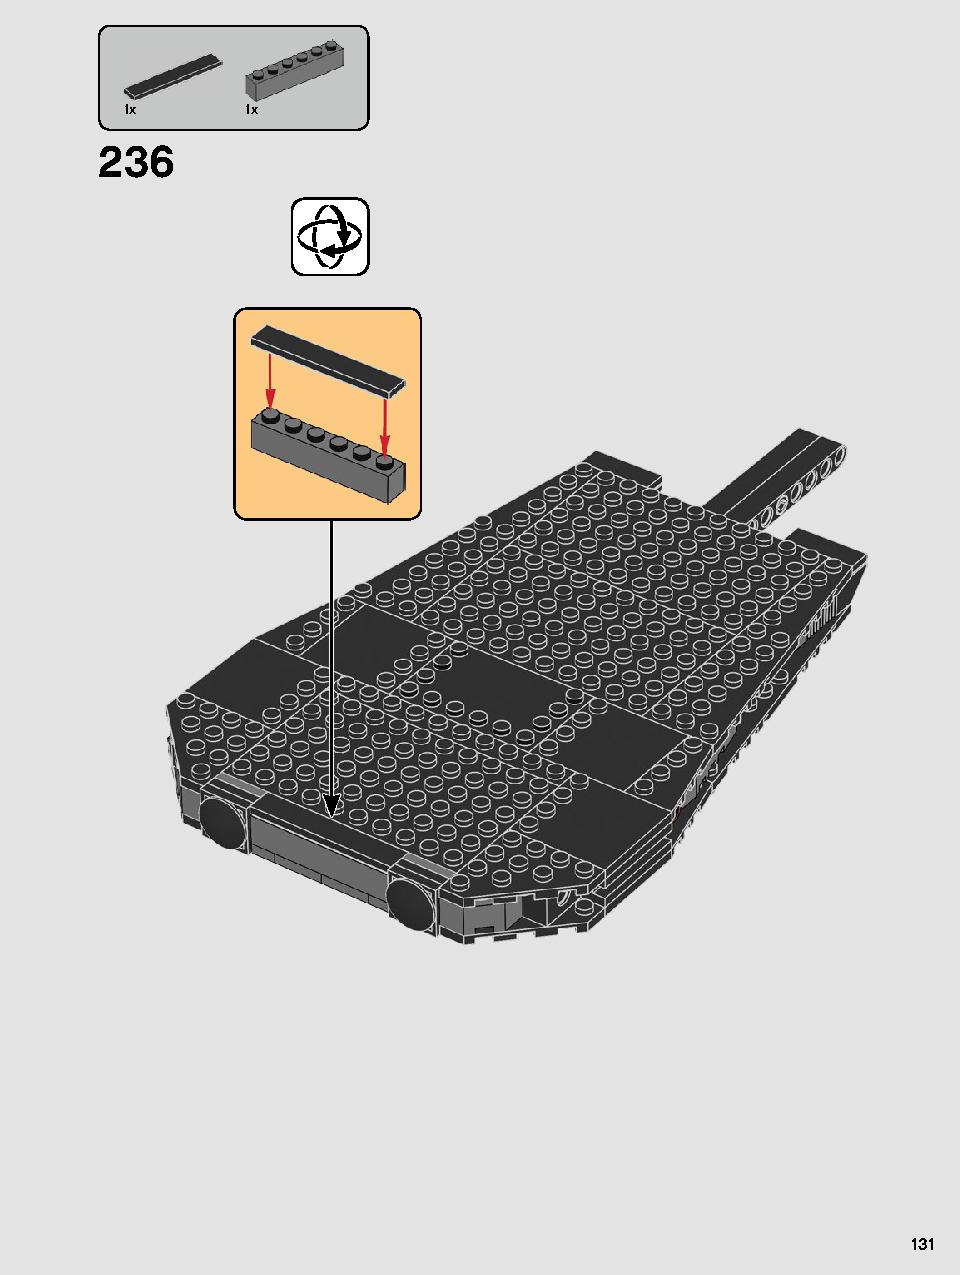 스타워즈 카일로 렌의 셔틀™ 75256 레고 세트 제품정보 레고 조립설명서 131 page